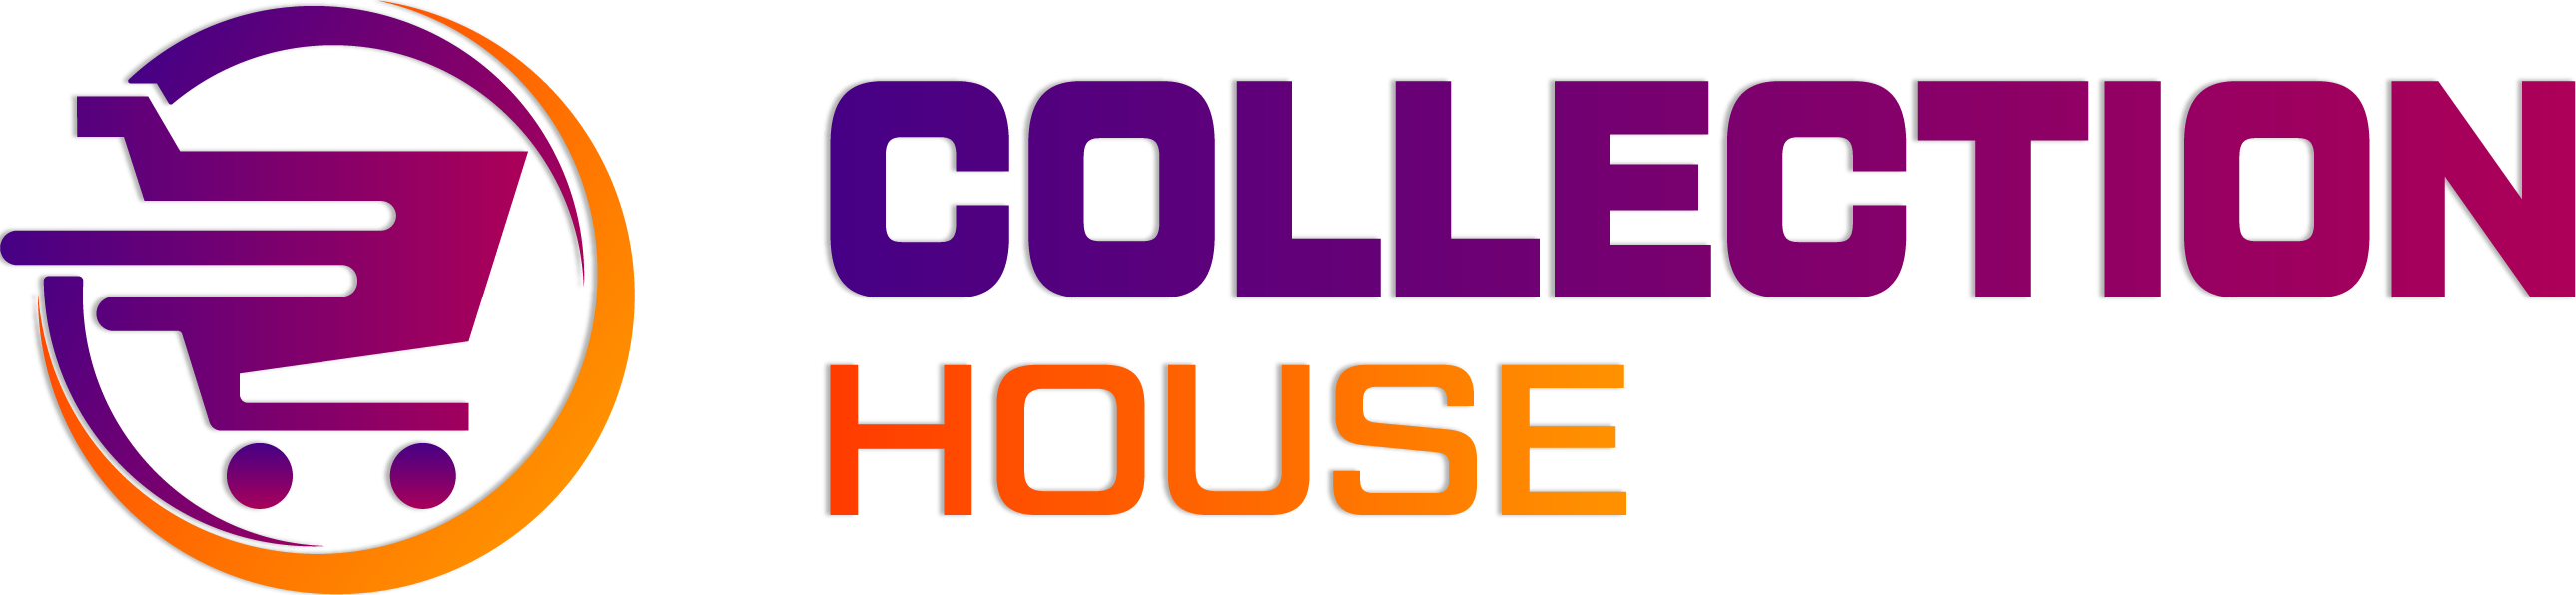 logo.collection house